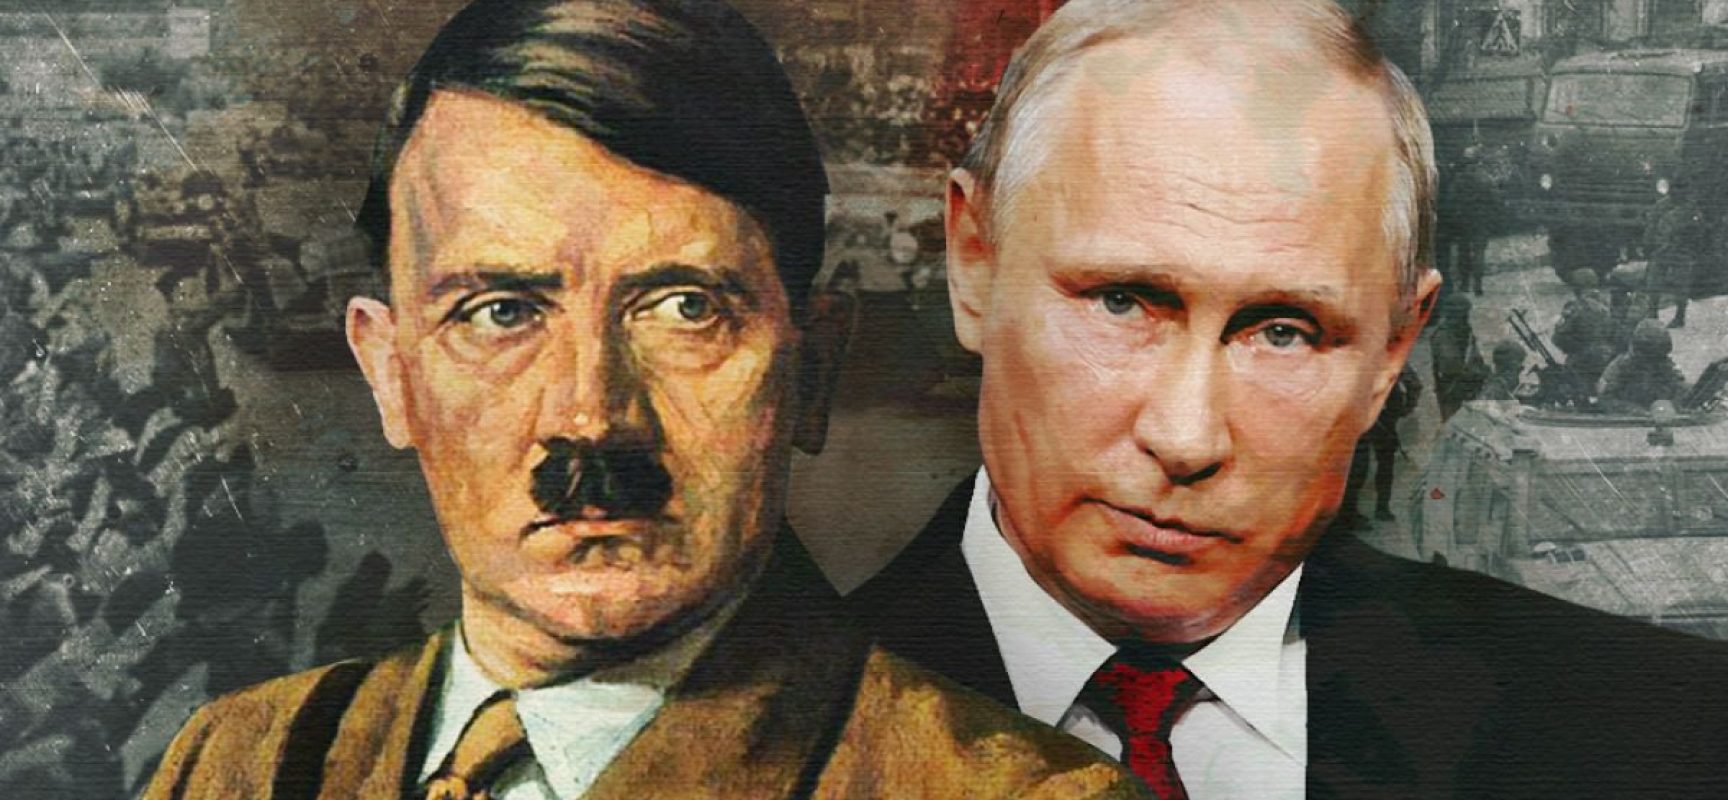 Фейковая цитата Гитлера и оправдание раздела Польши: 5 примеров неправды в статье Путина о Второй мировой войне